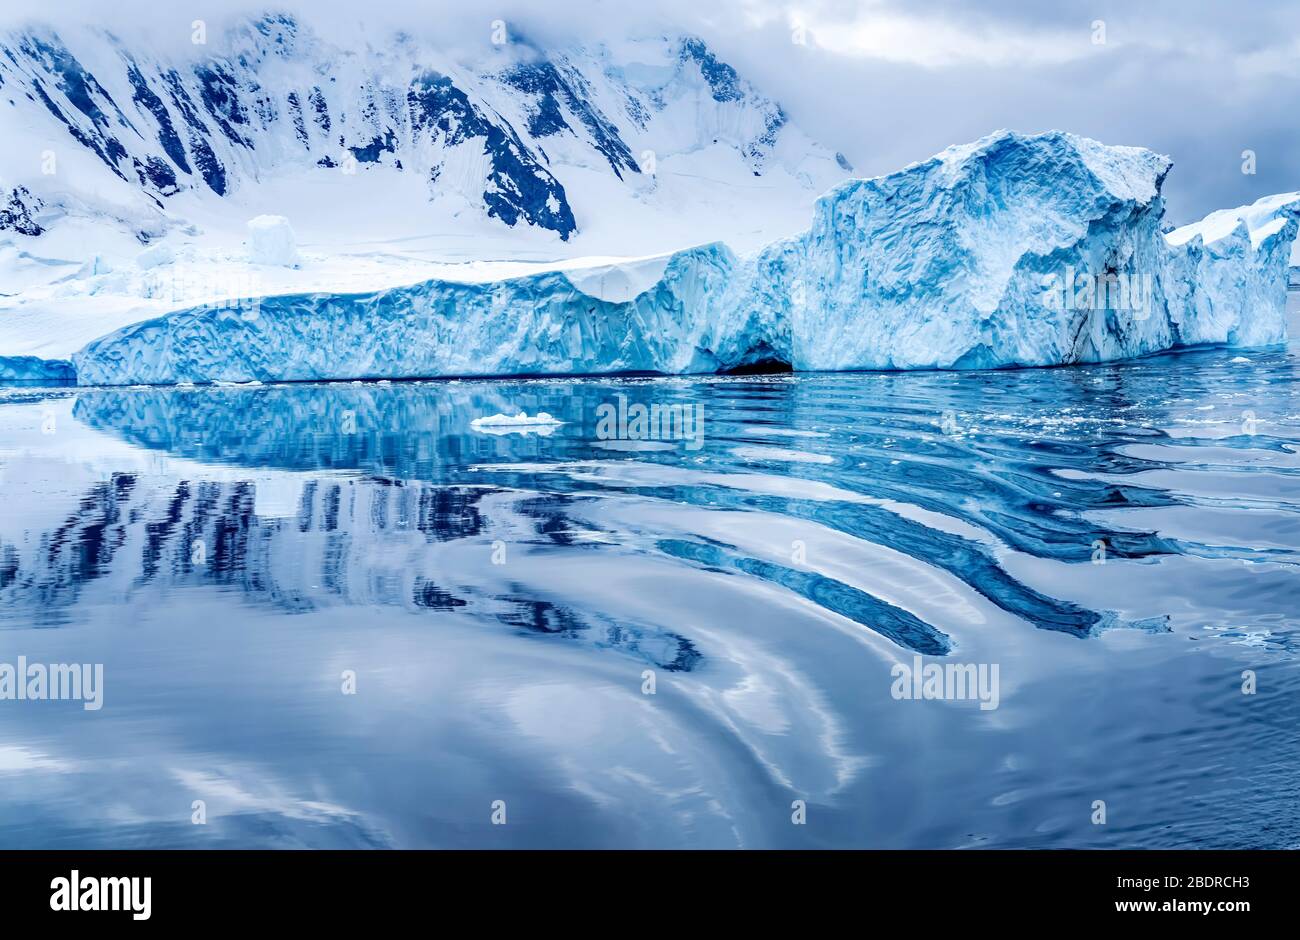 Reflet de l'iceberg Résumé montagnes des neiges Glaciers bleus Dorian Bay Antarctique Peninsula Antarctique. Bleu glace glacier car l'air est déneigé Banque D'Images